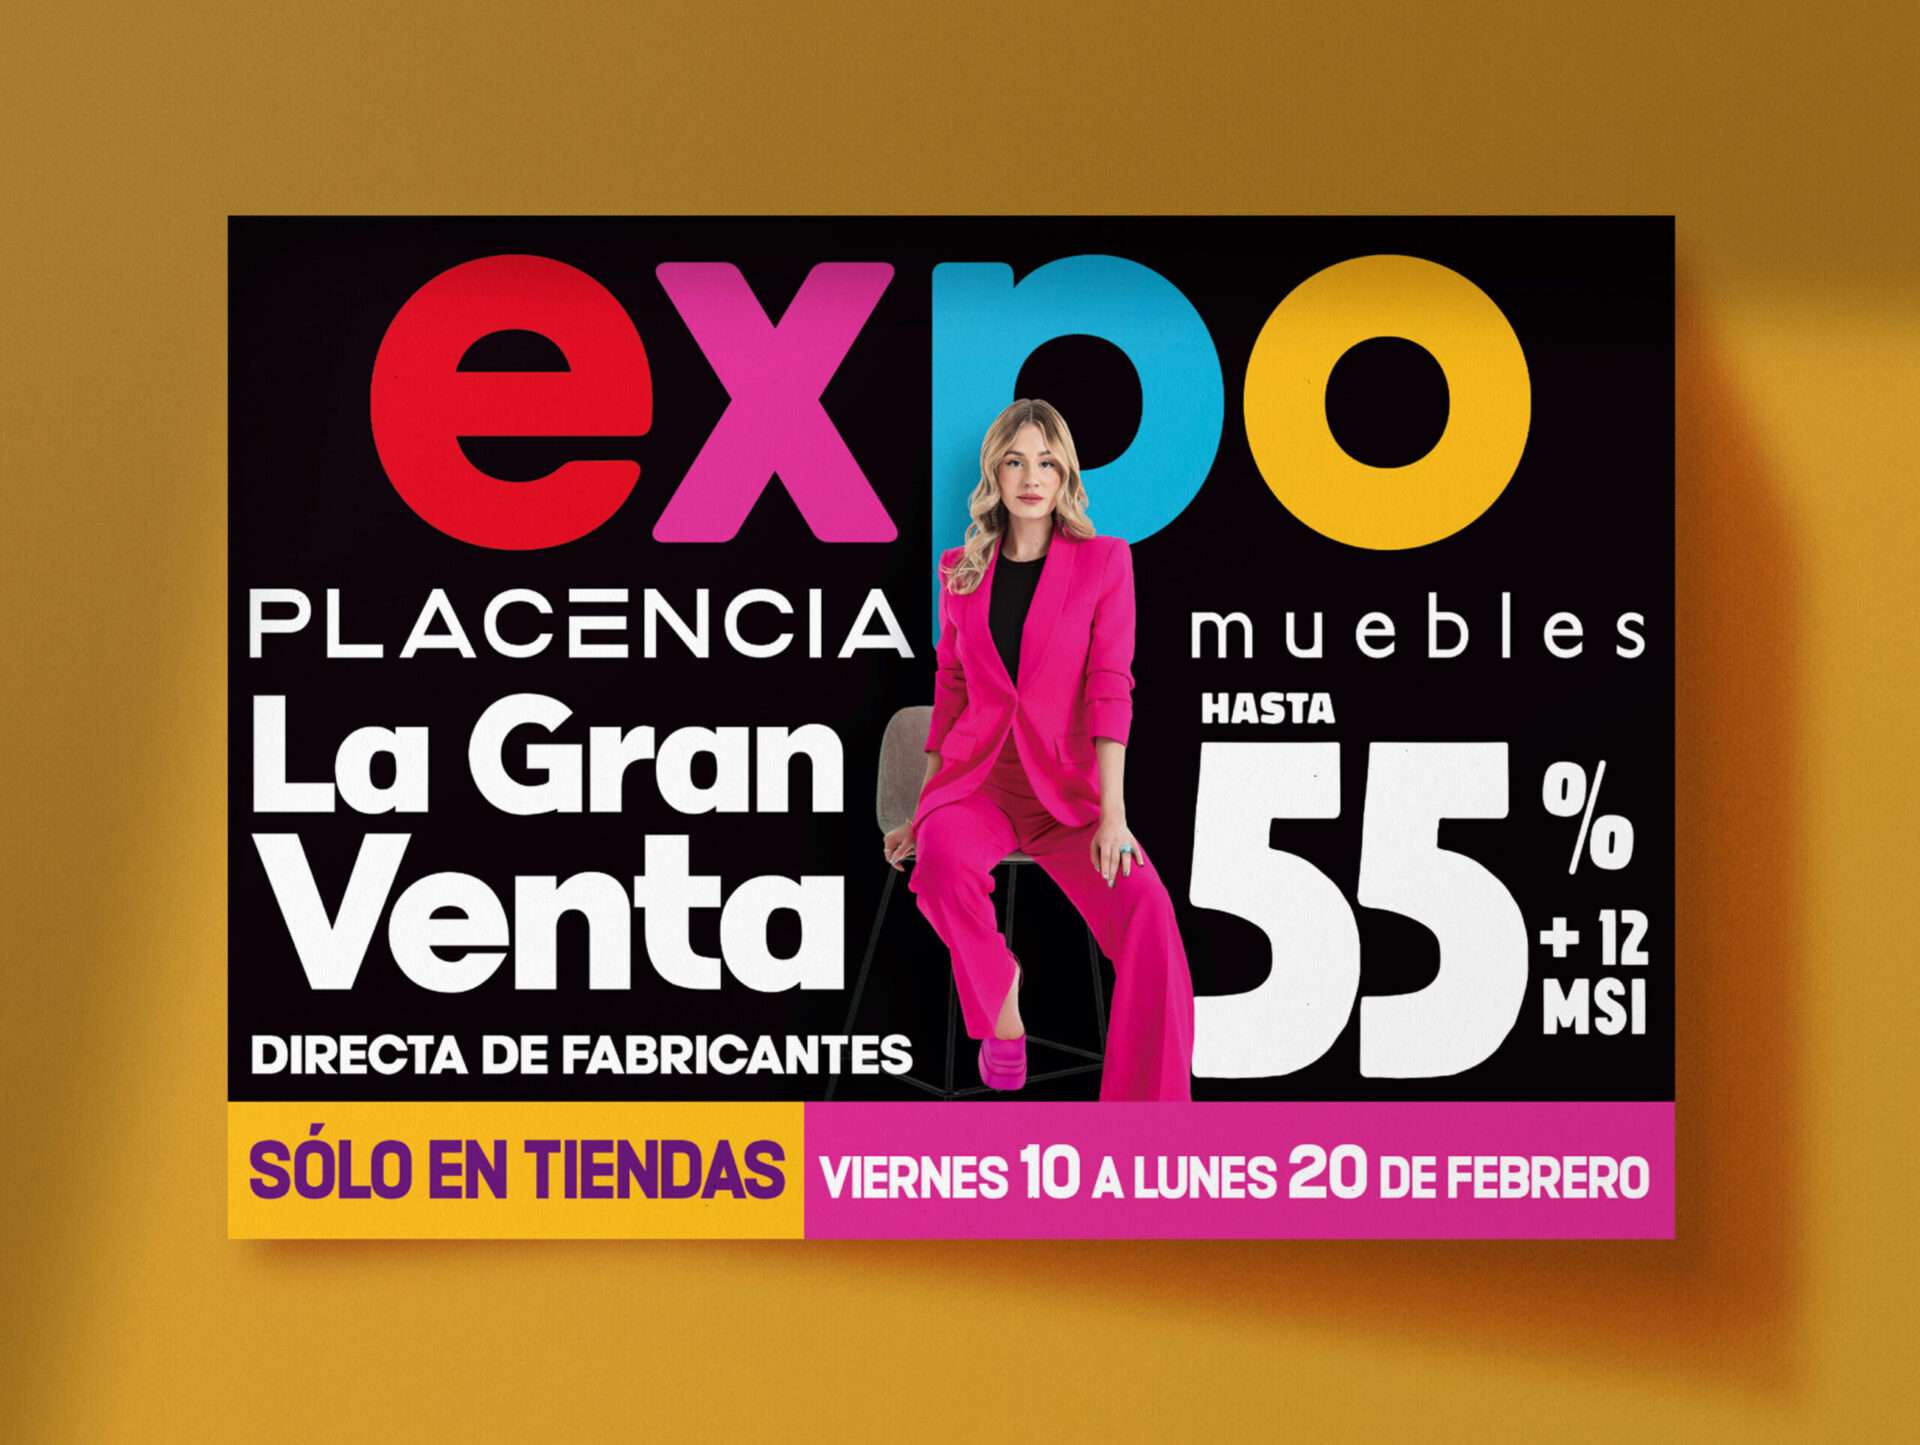 Placencia Muebles / Expo Muebles Placencia